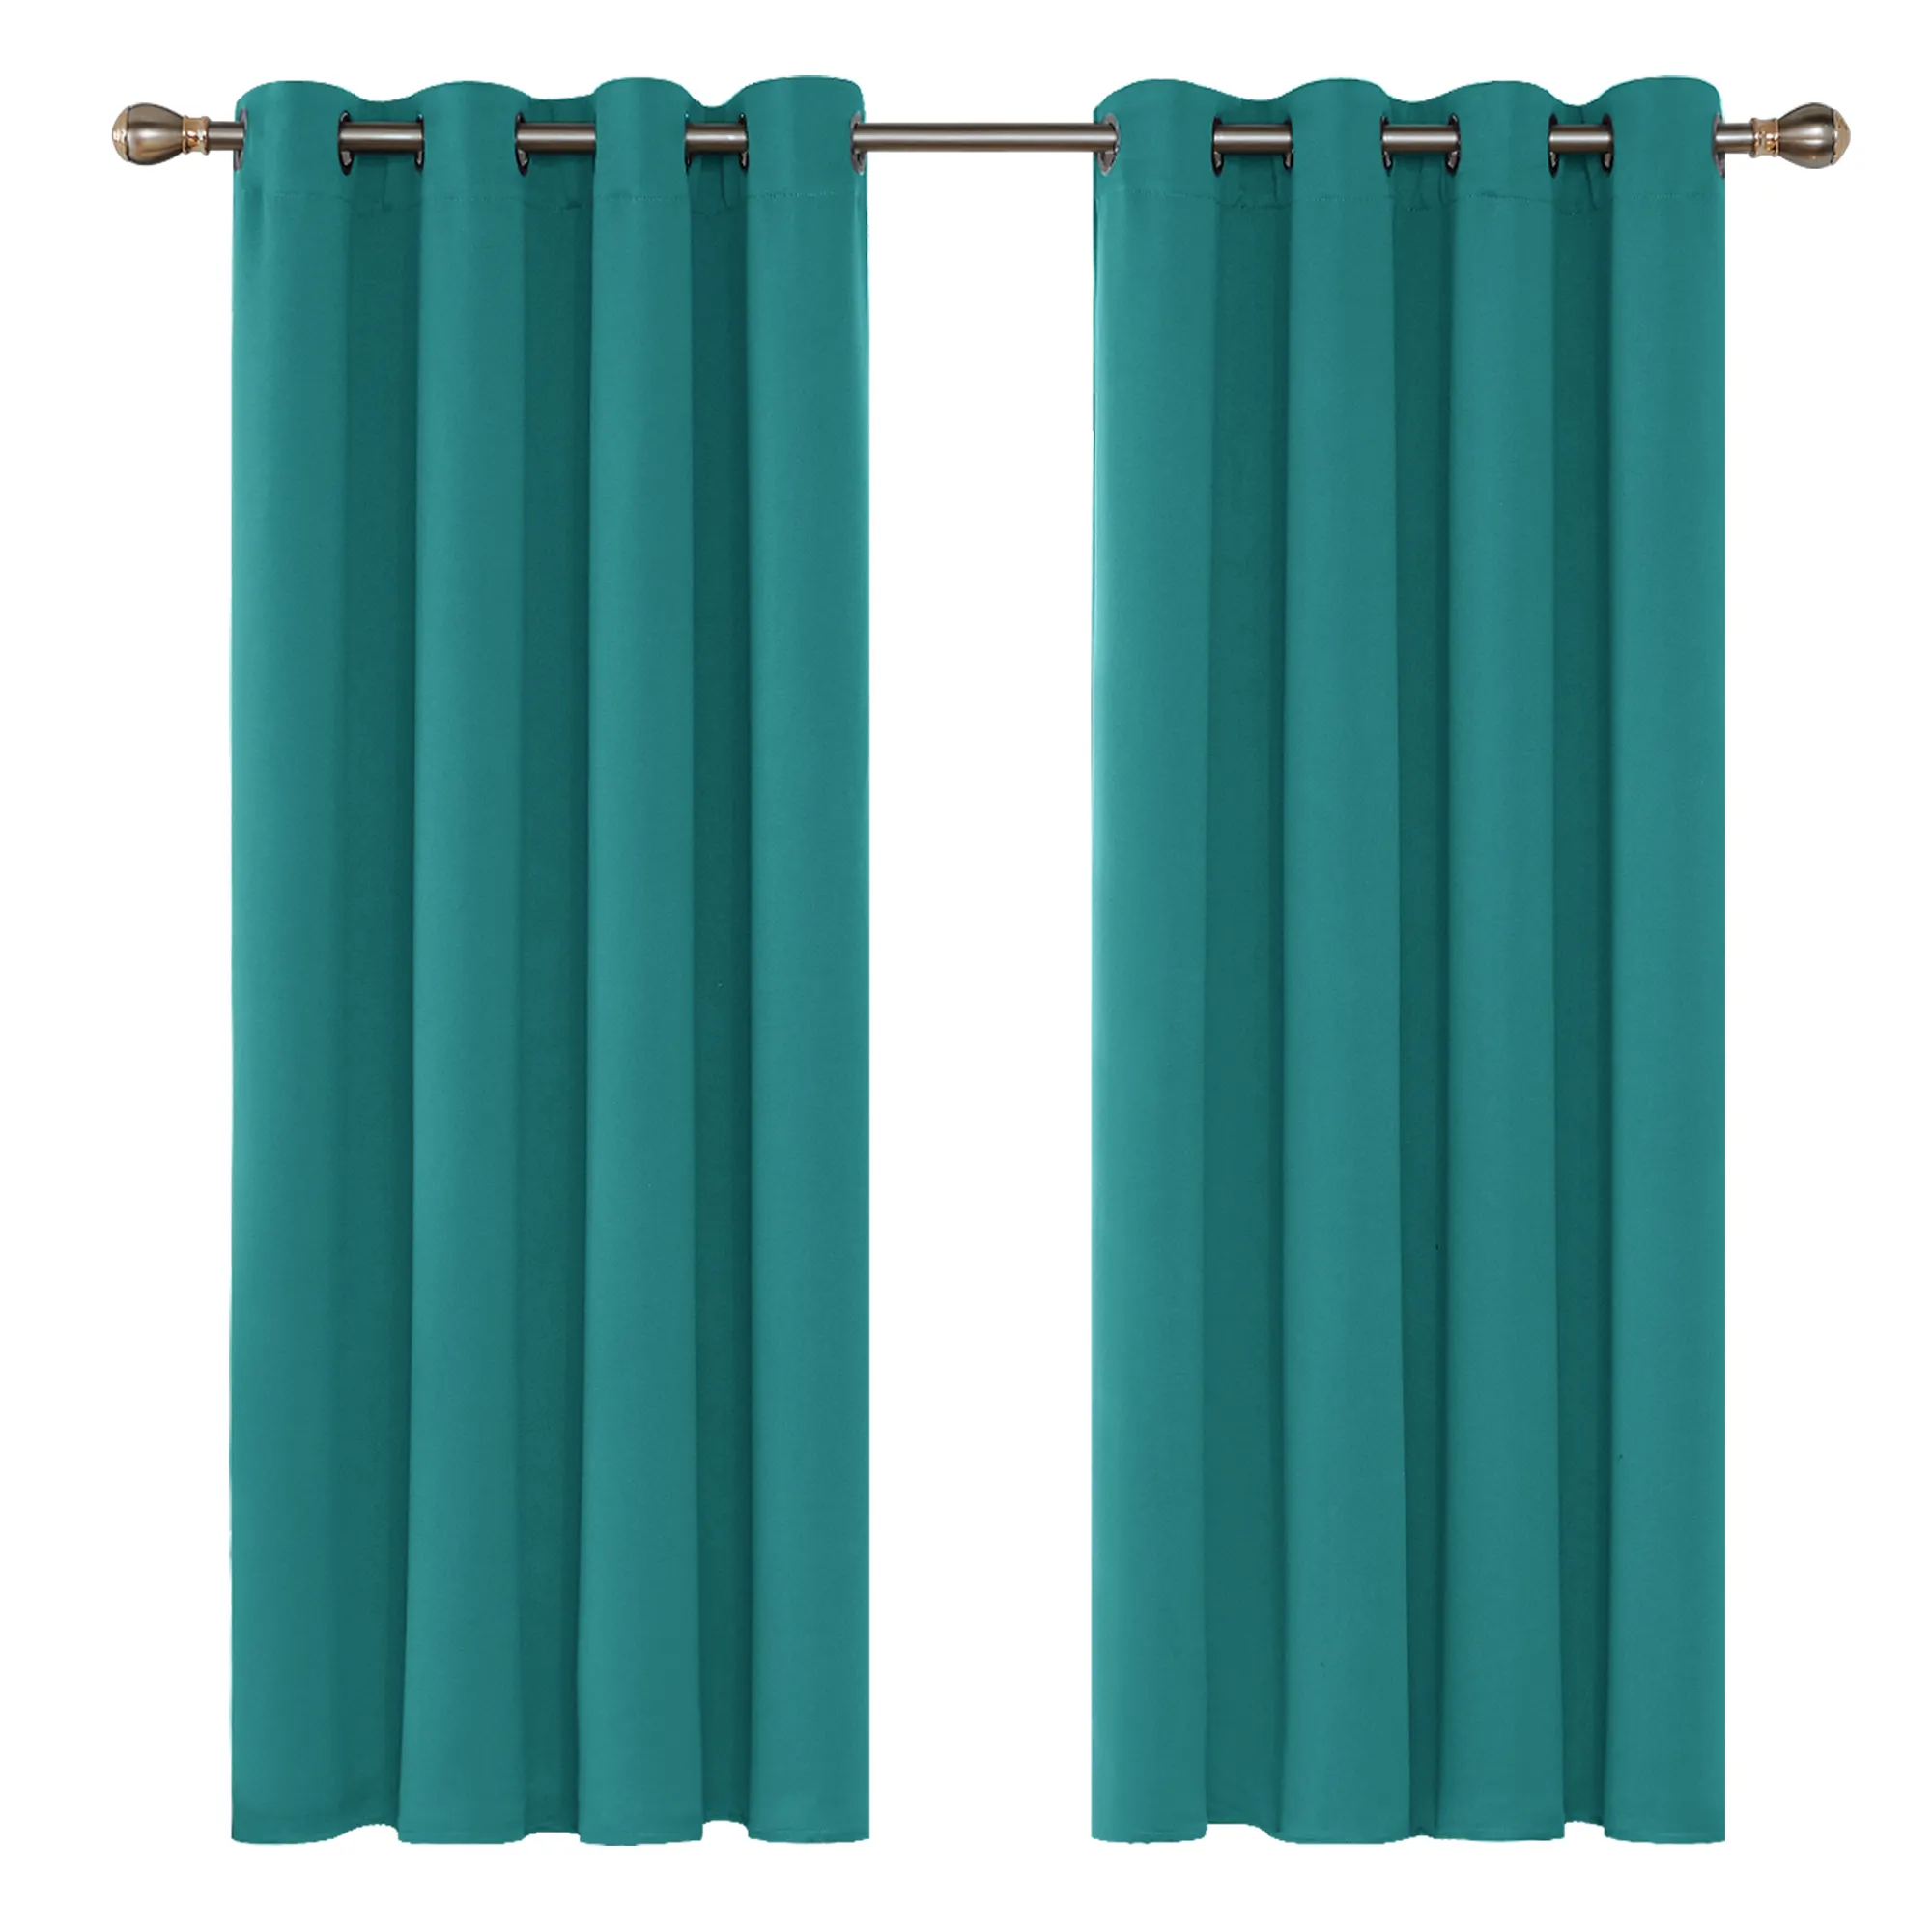 Benutzer definierte türkis farbene Farbe Fertige Verdunkelung vorhänge Vorhänge für das Wohnzimmer Vorhang Stoff Cortinas FENSTER VORHANG